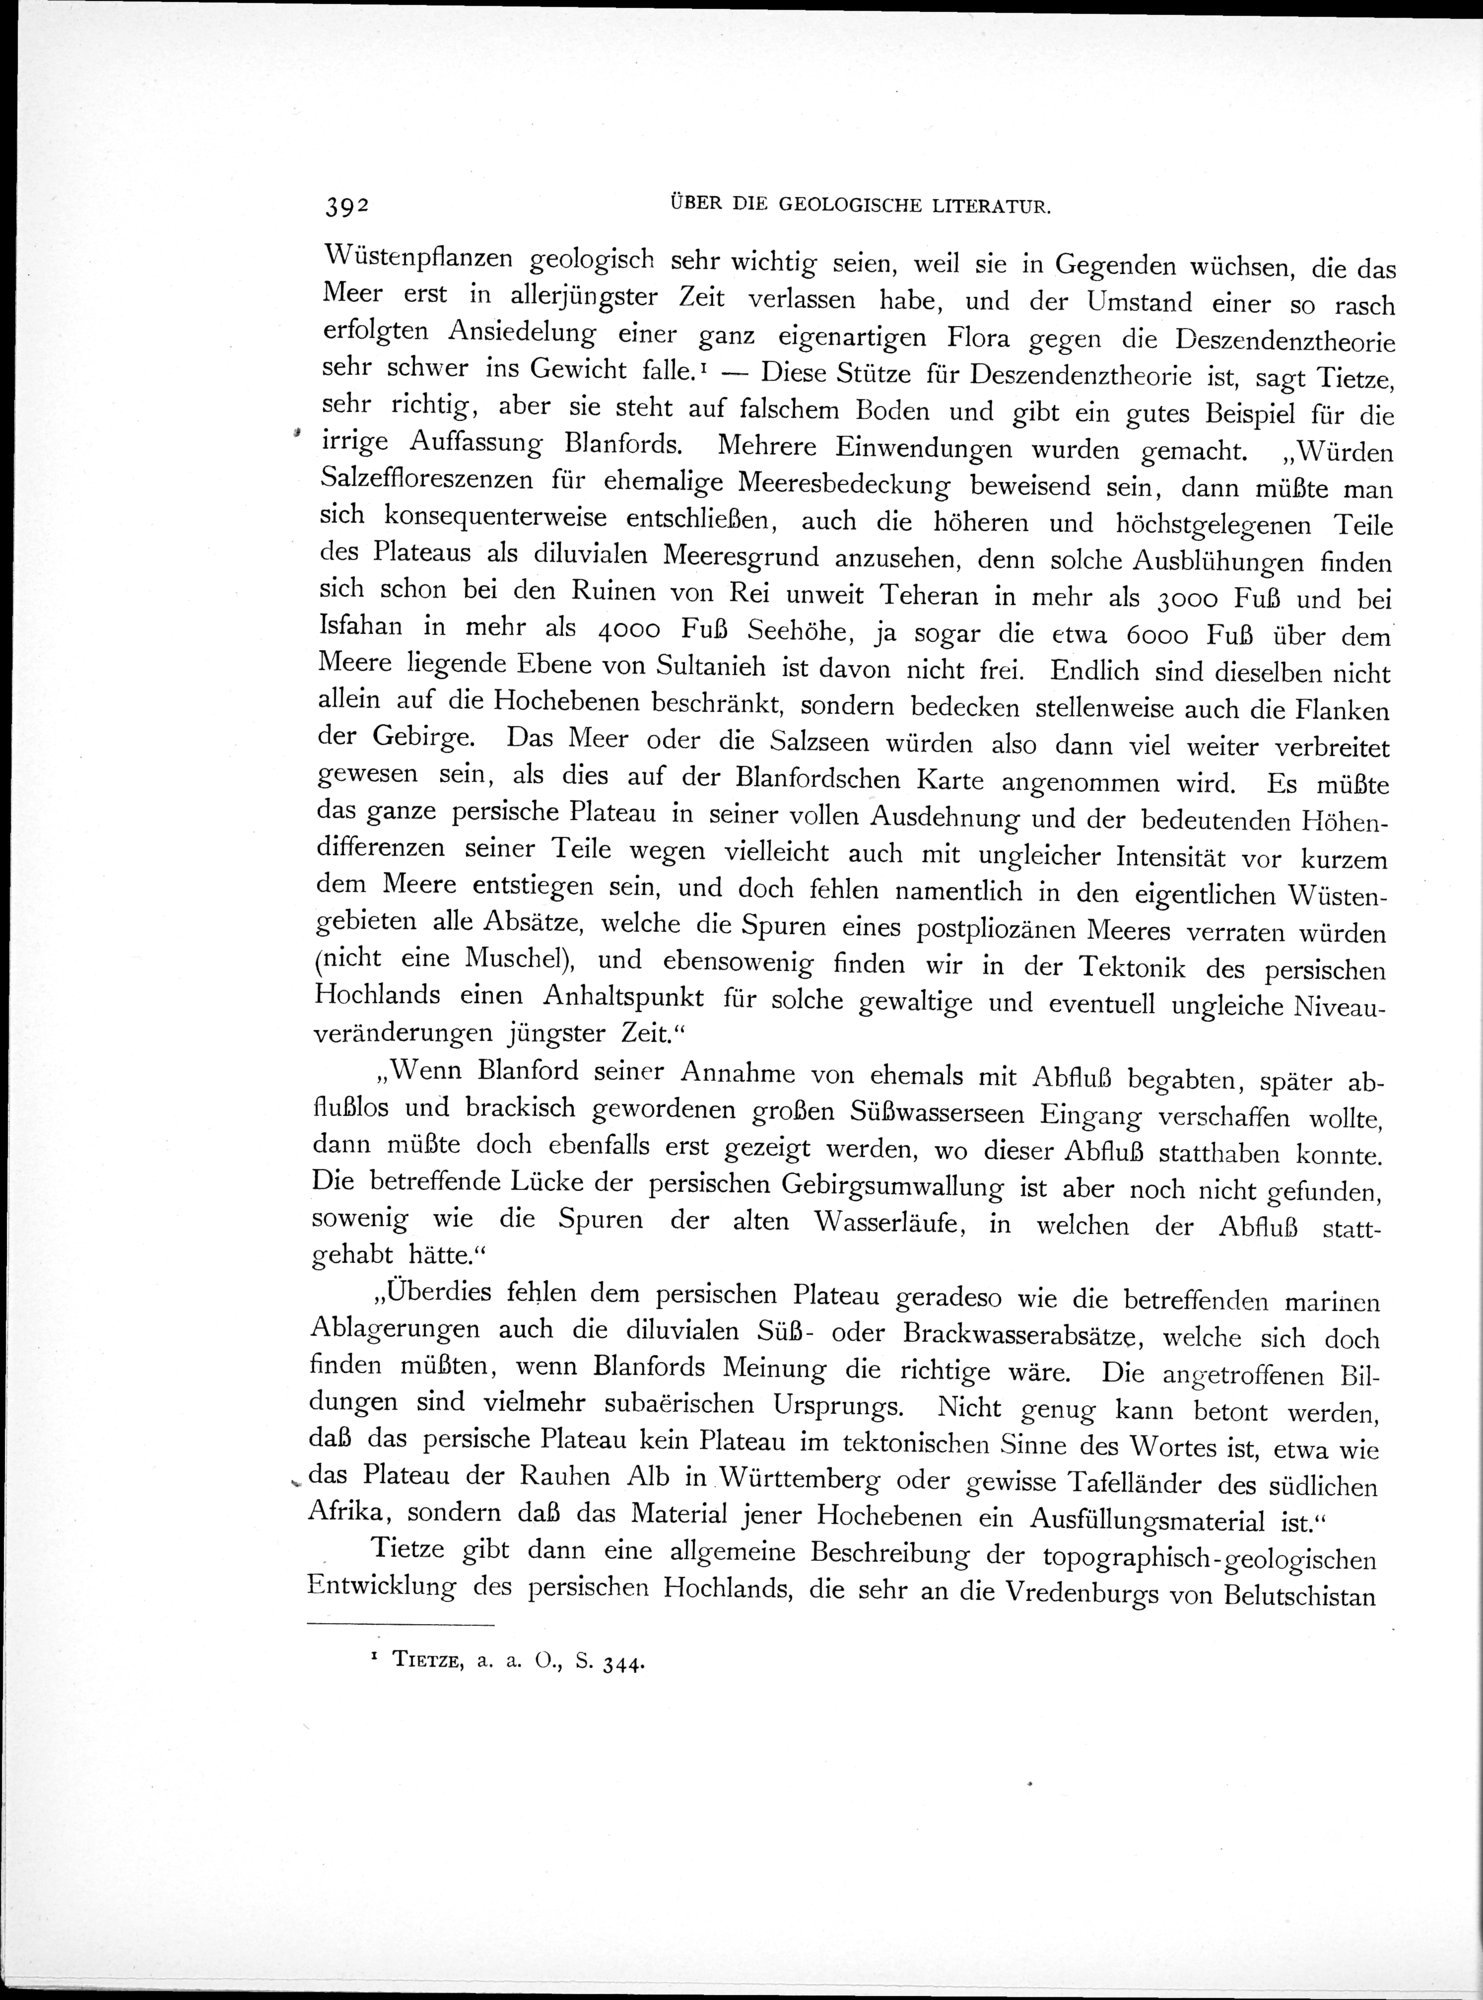 Eine Routenaufnahme durch Ostpersien : vol.2 / Page 462 (Grayscale High Resolution Image)